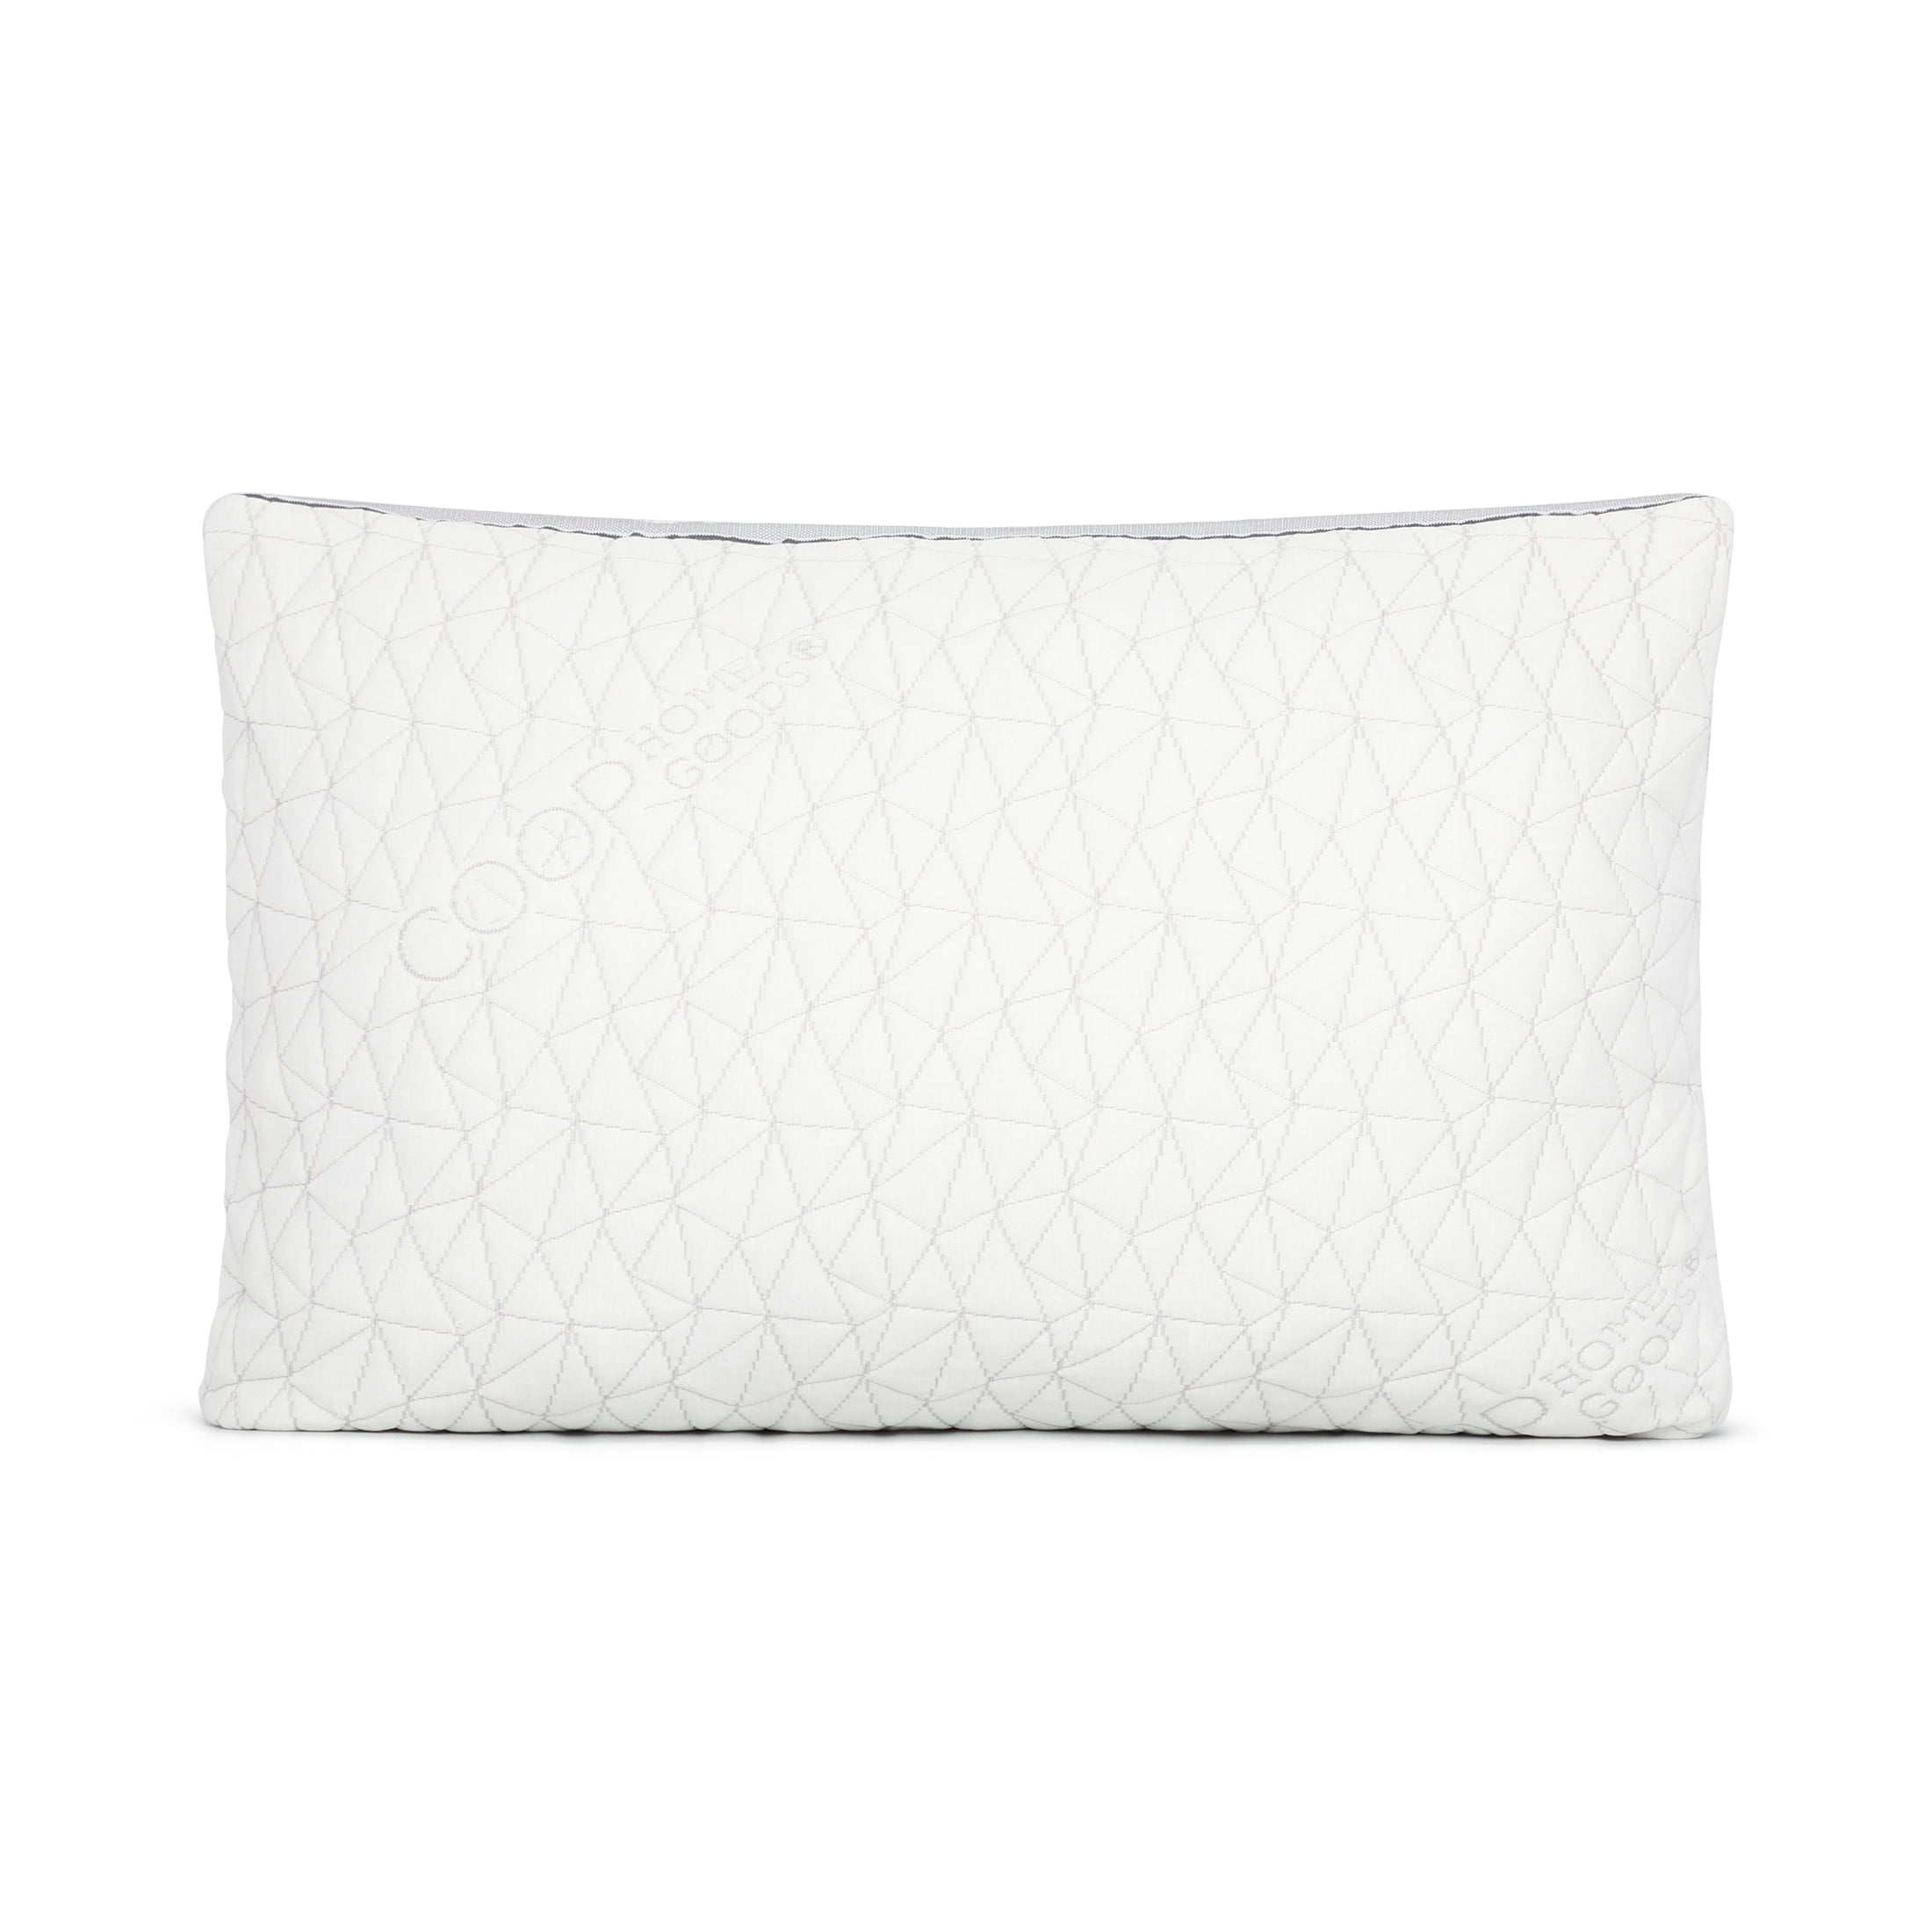 Hypoallergenic Shredded Memory Queen Eden Adjustable Pillow Coop Home Goods 